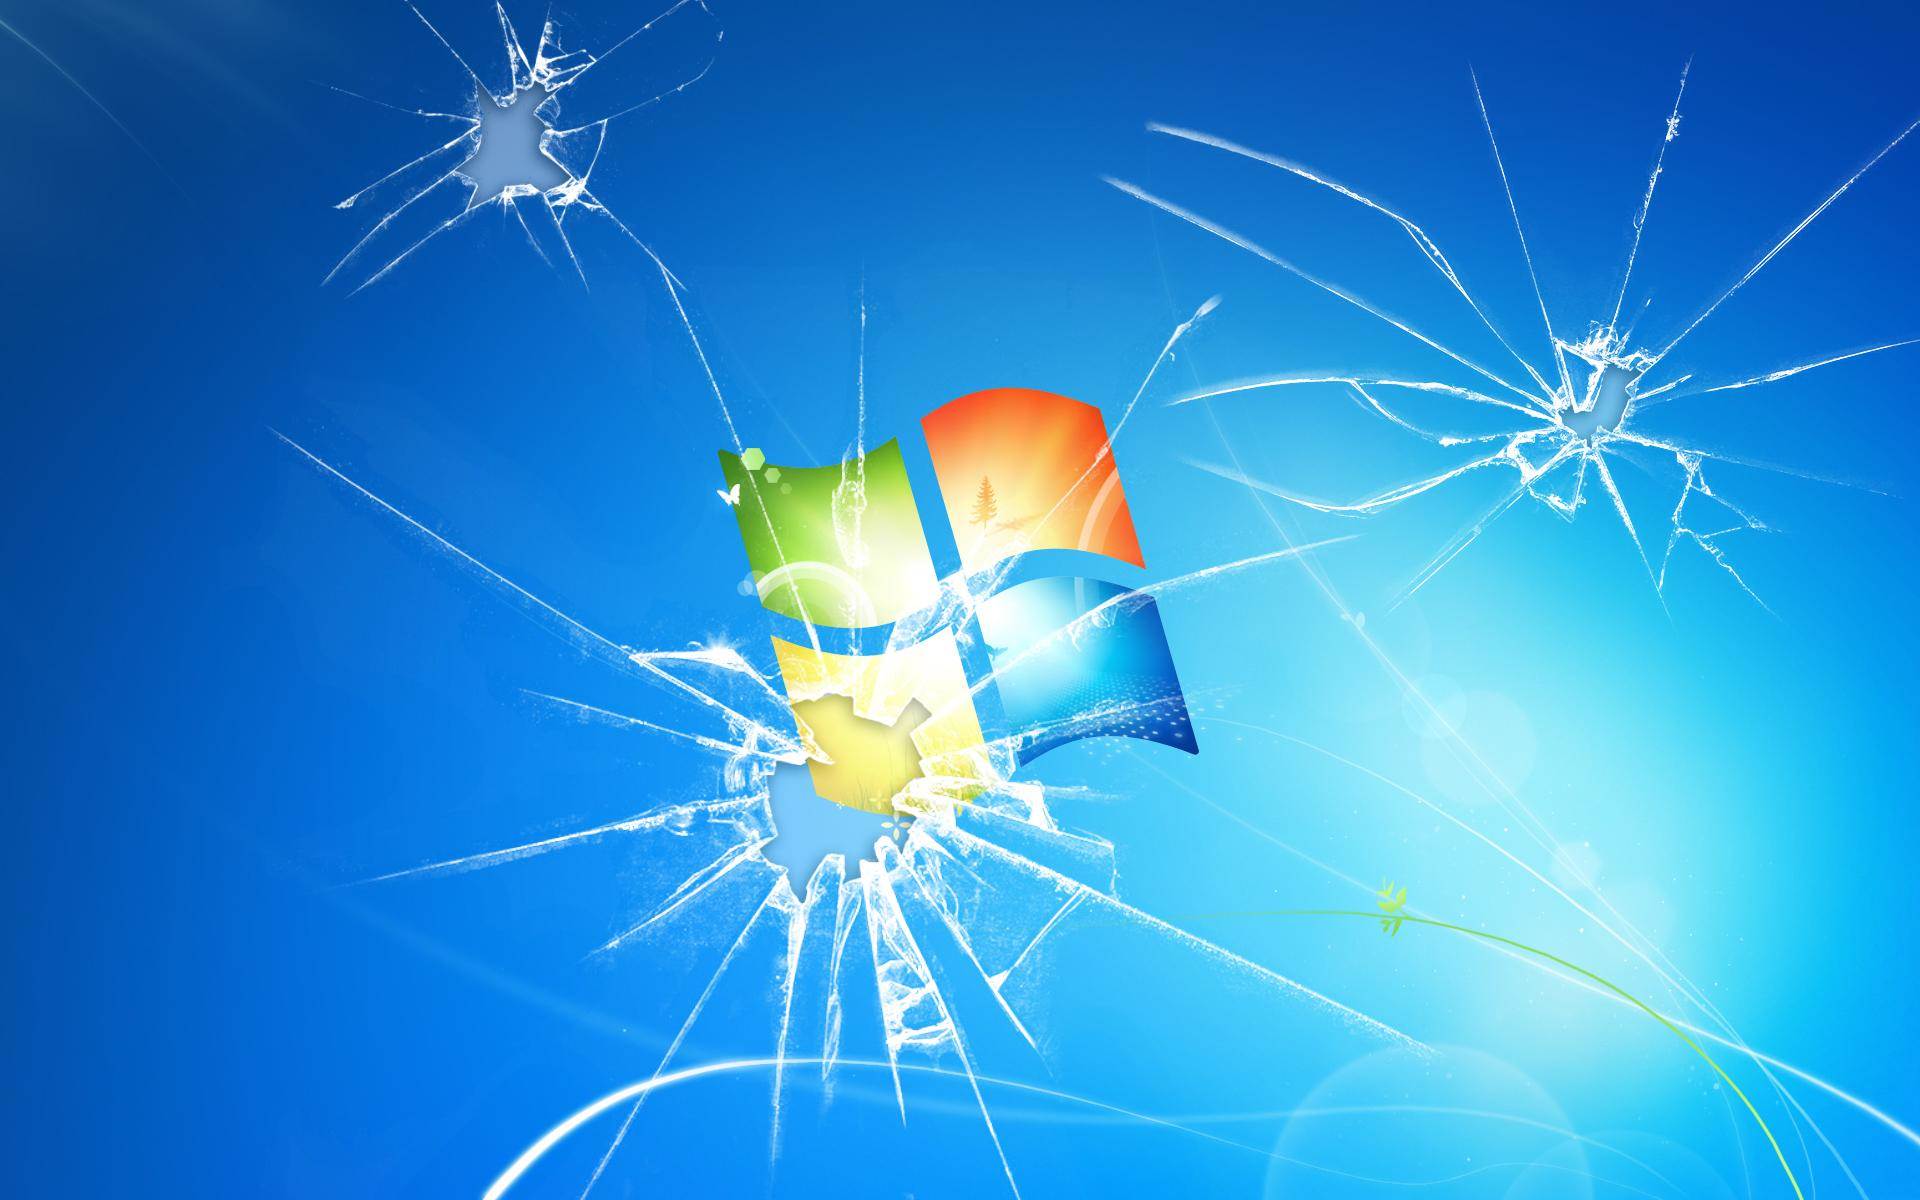 Broken Windows Background